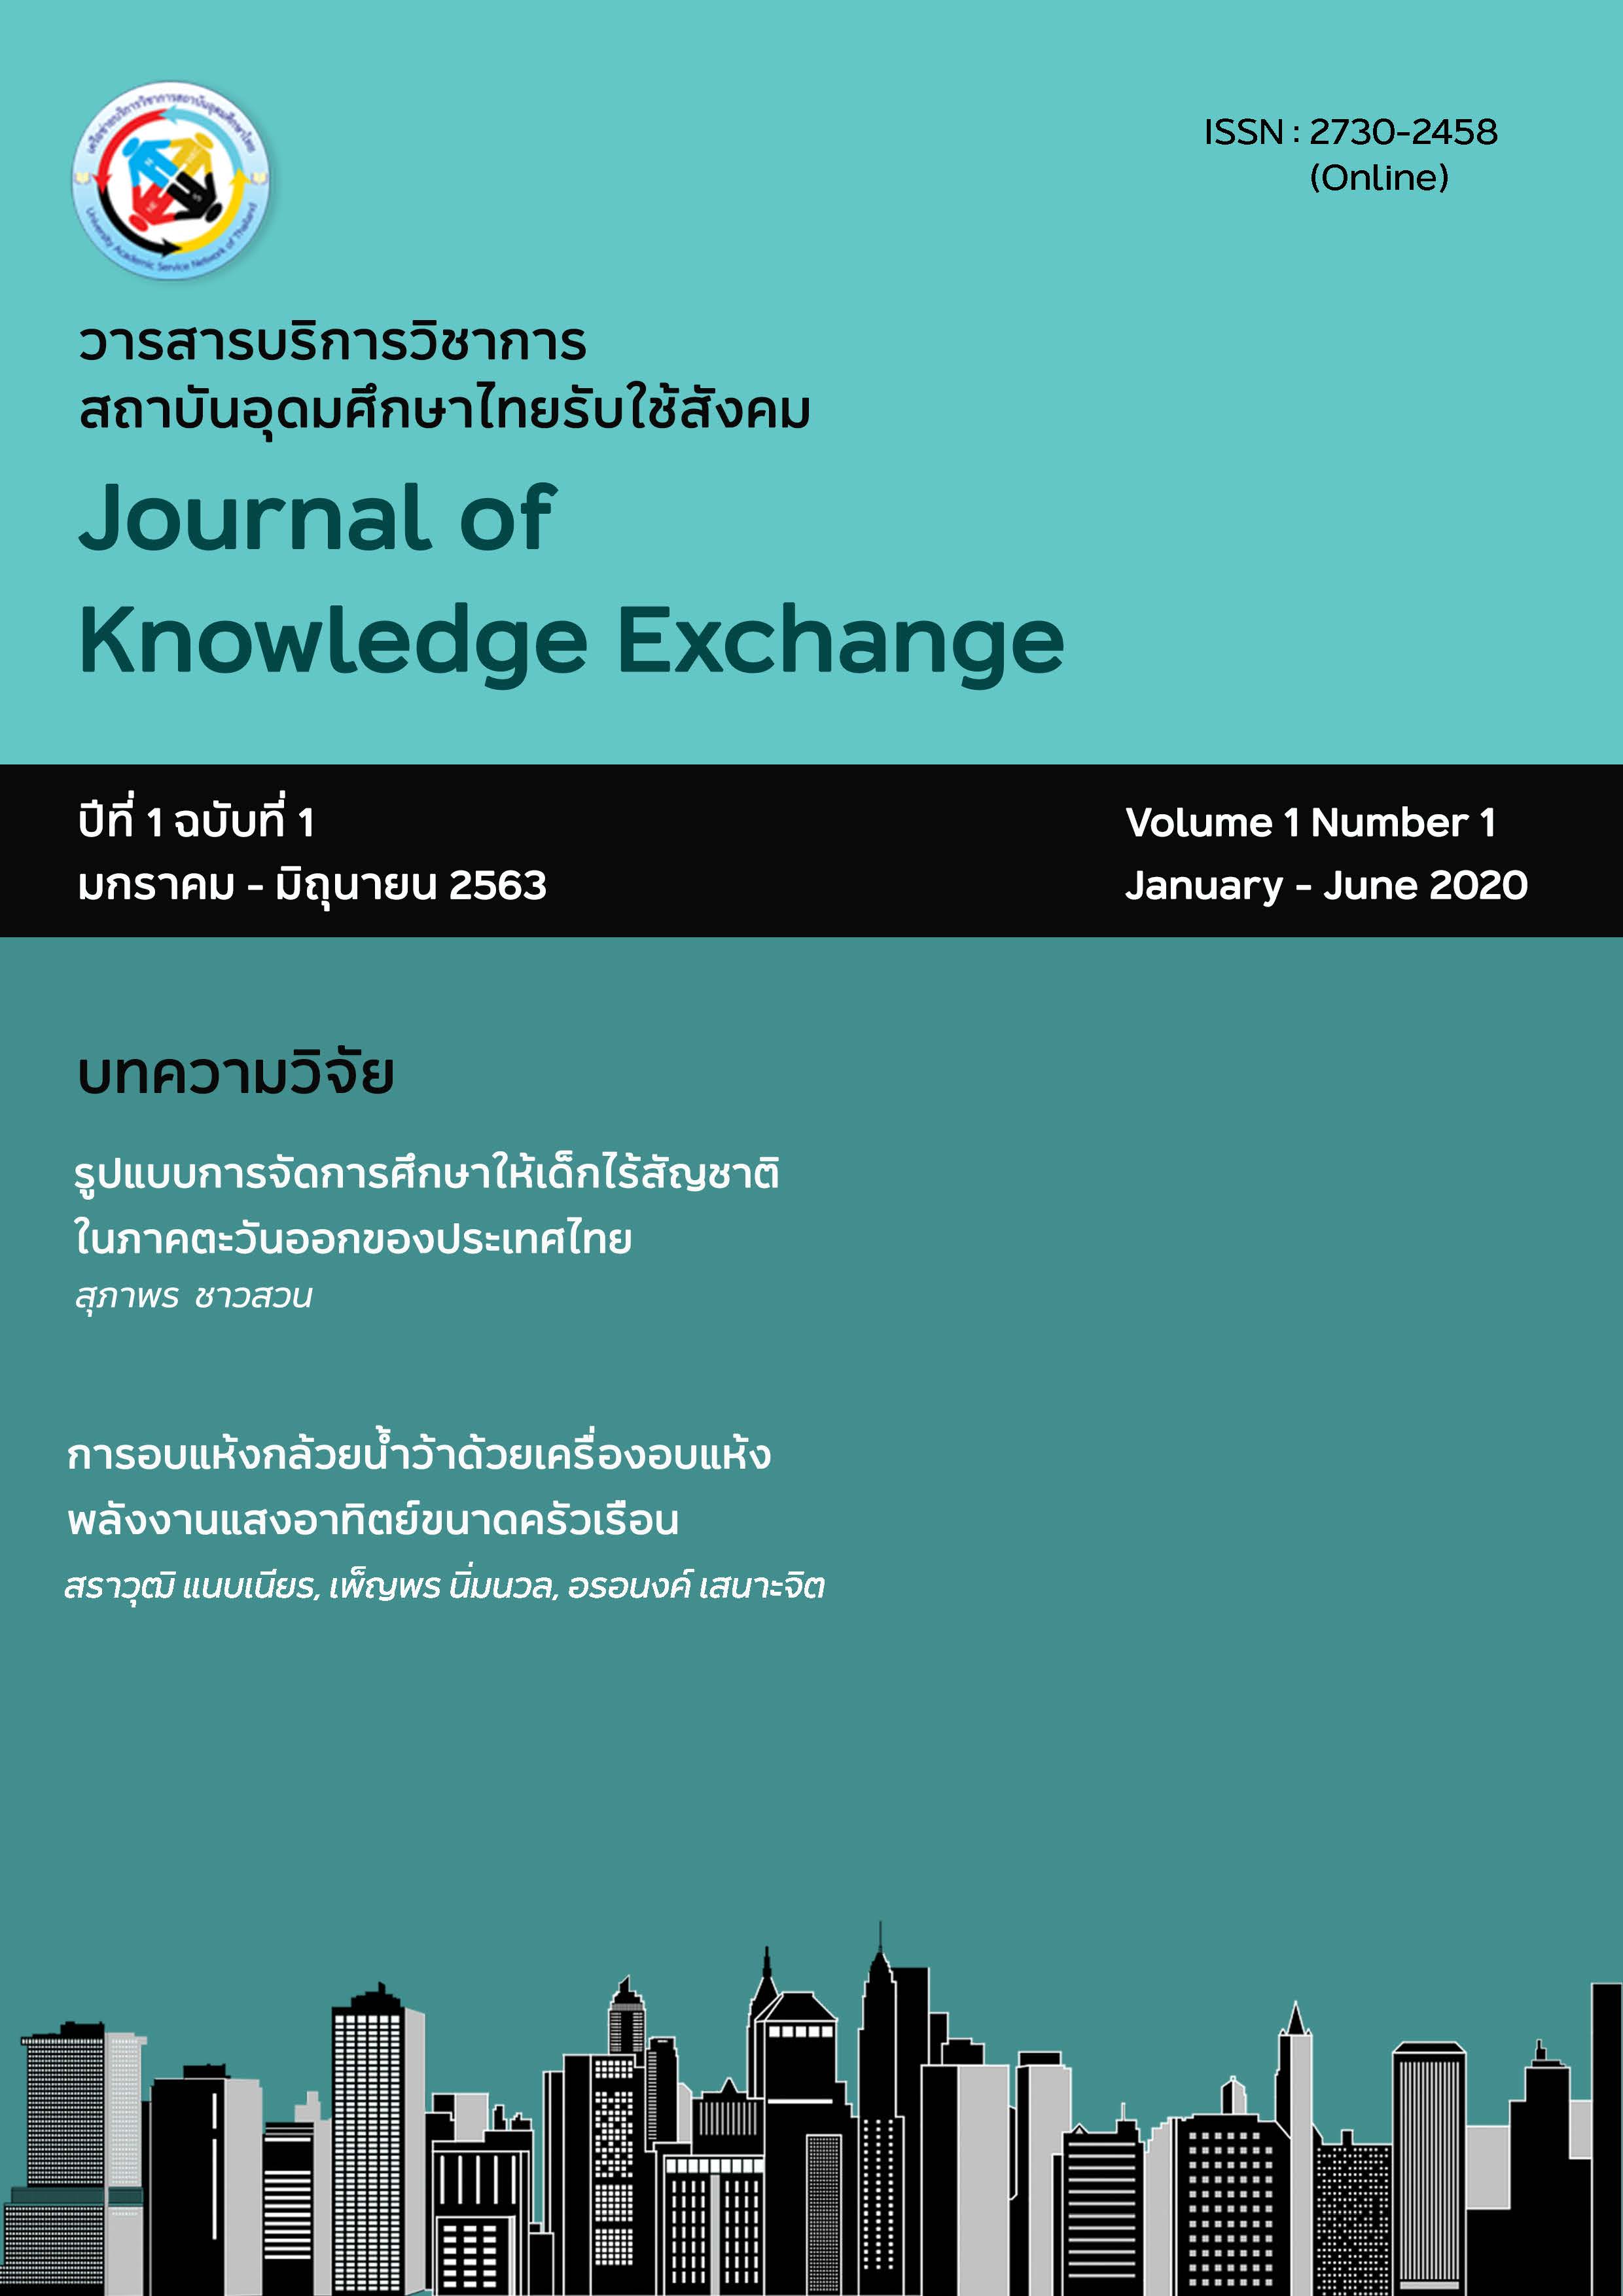 					View Vol. 1 No. 1 (2563): วารสารบริการวิชาการสถาบันอุดมศึกษาไทยรับใช้สังคม ปีที่ 1 ฉบับที่ 1 เดือนมกราคม - มิถุนายน 2563
				